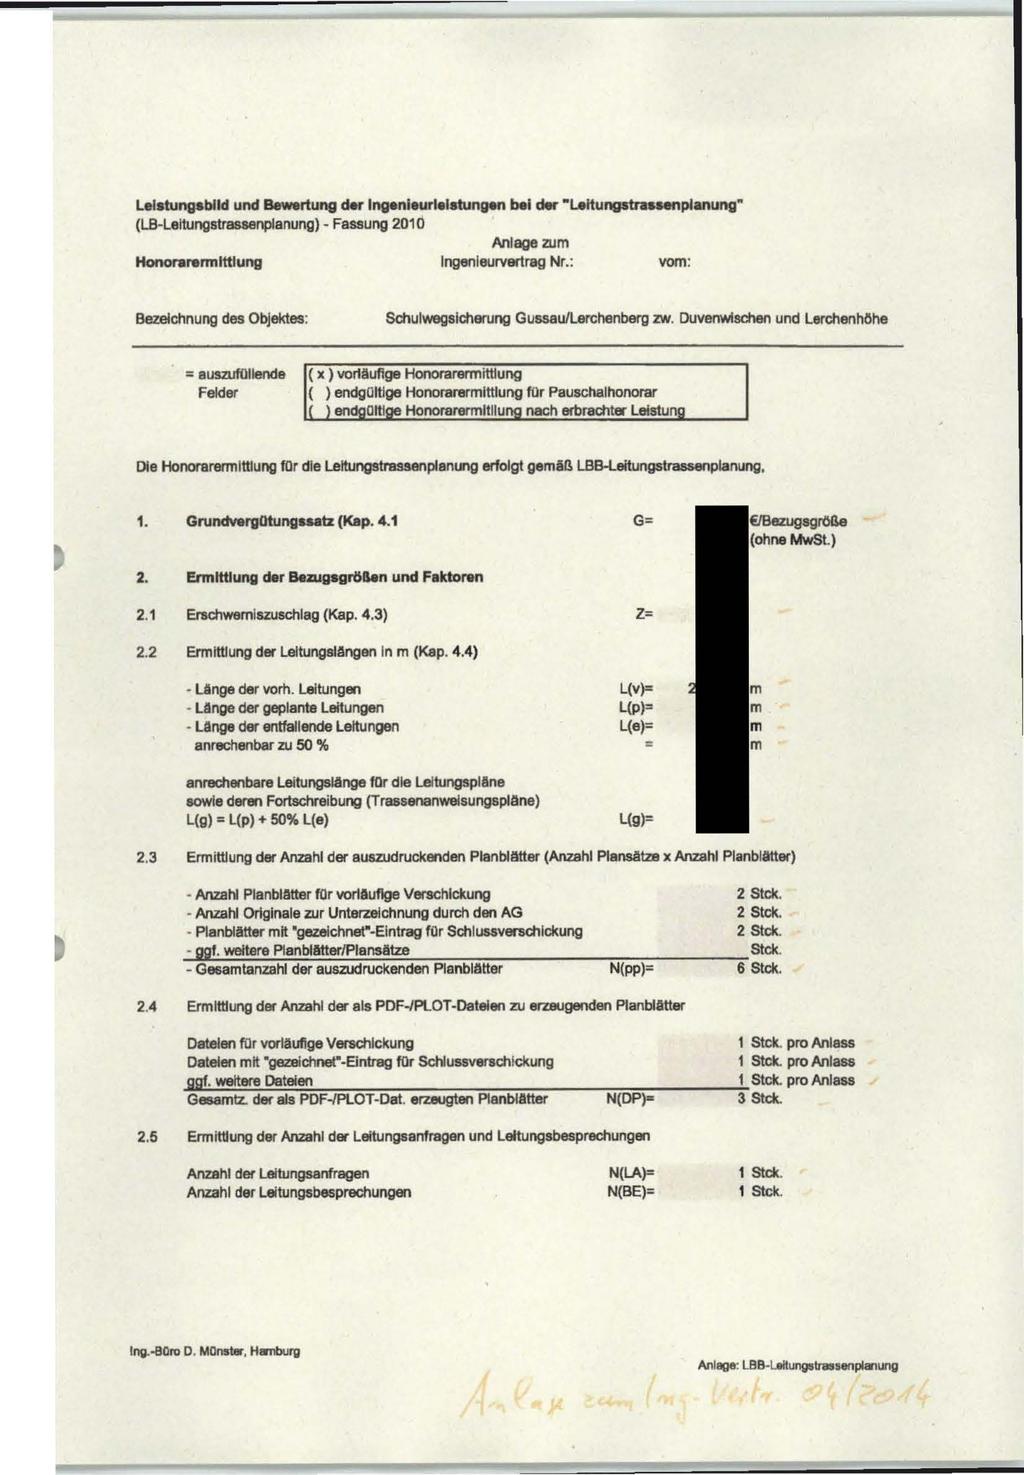 Lelstungsblld und Bewertung der lngenleurlelstun.,.n t>.i der Leftungstrauenplanung" (LB-Leltungstrassenplanung) - Fassung 2010 Anlage zum Honorarennltttung lngenleurvertrag Nr.